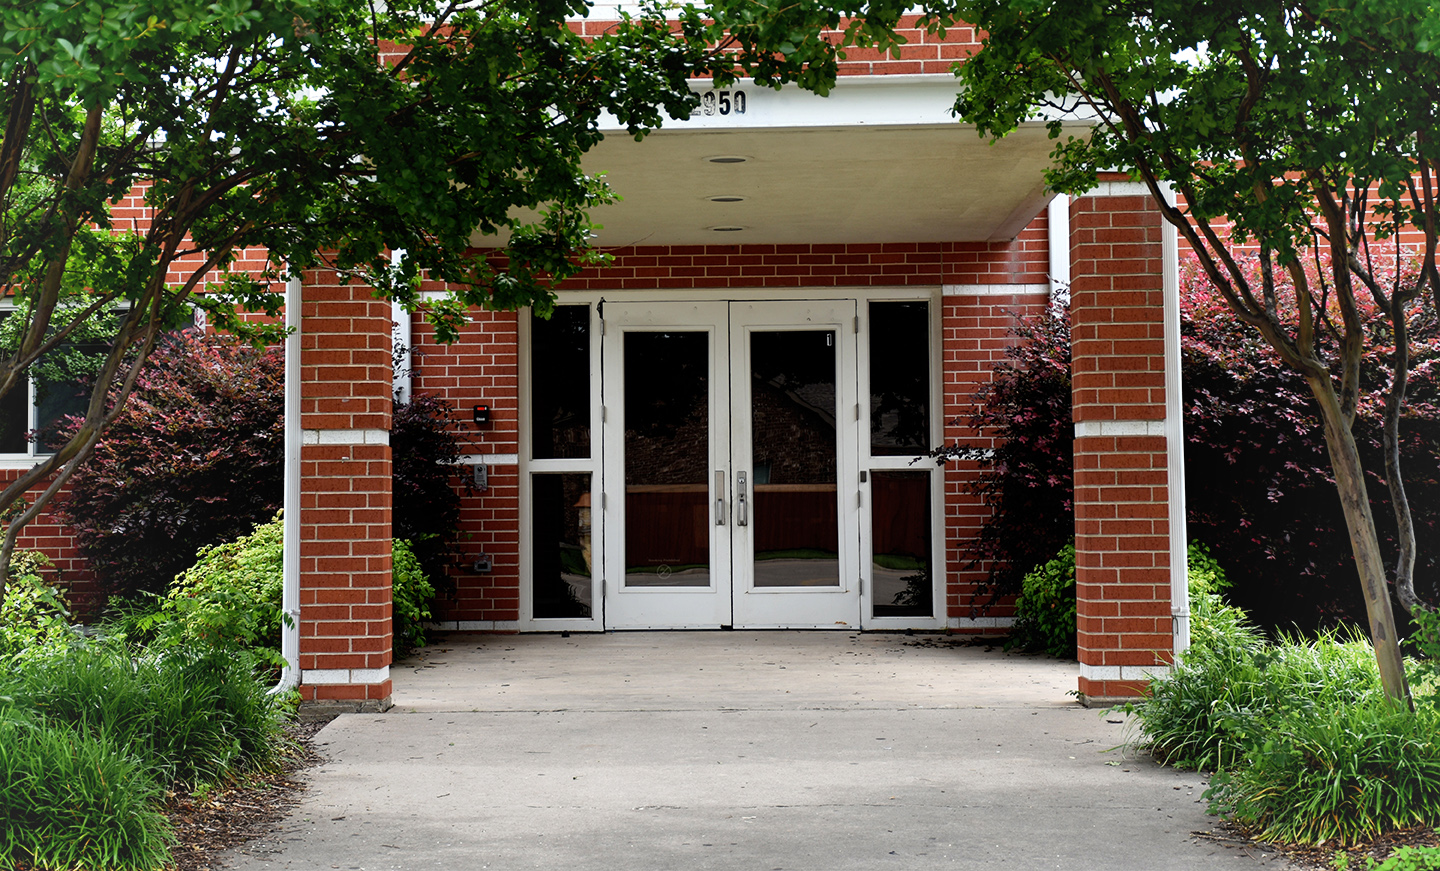 Sixth Grade Center entrance